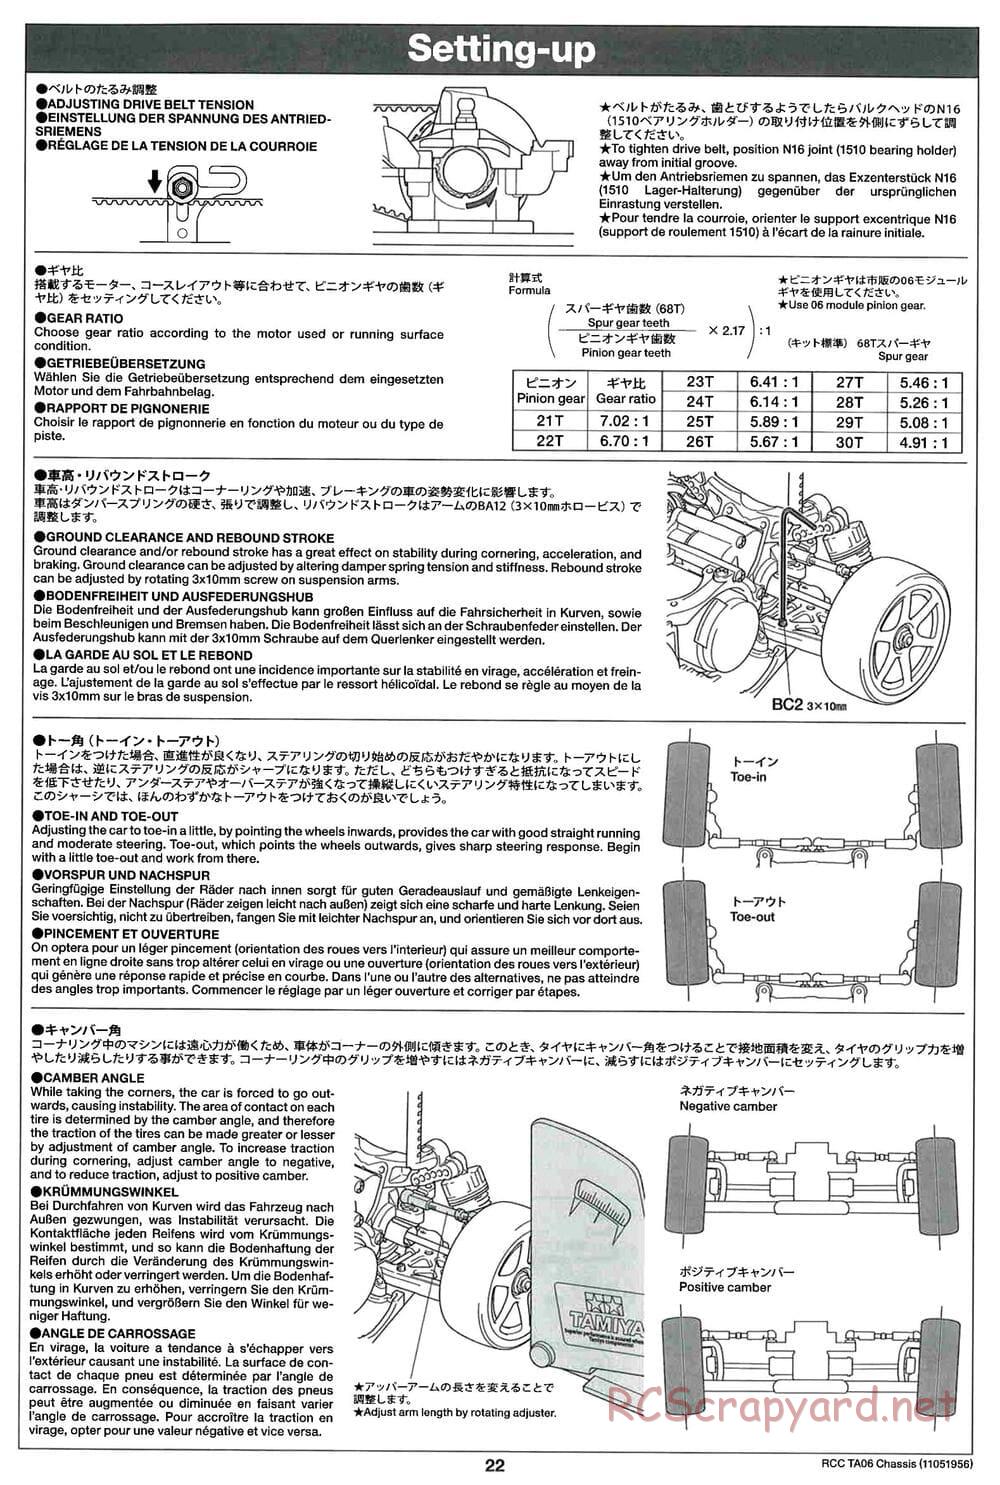 Tamiya - TA06 Chassis - Manual - Page 22